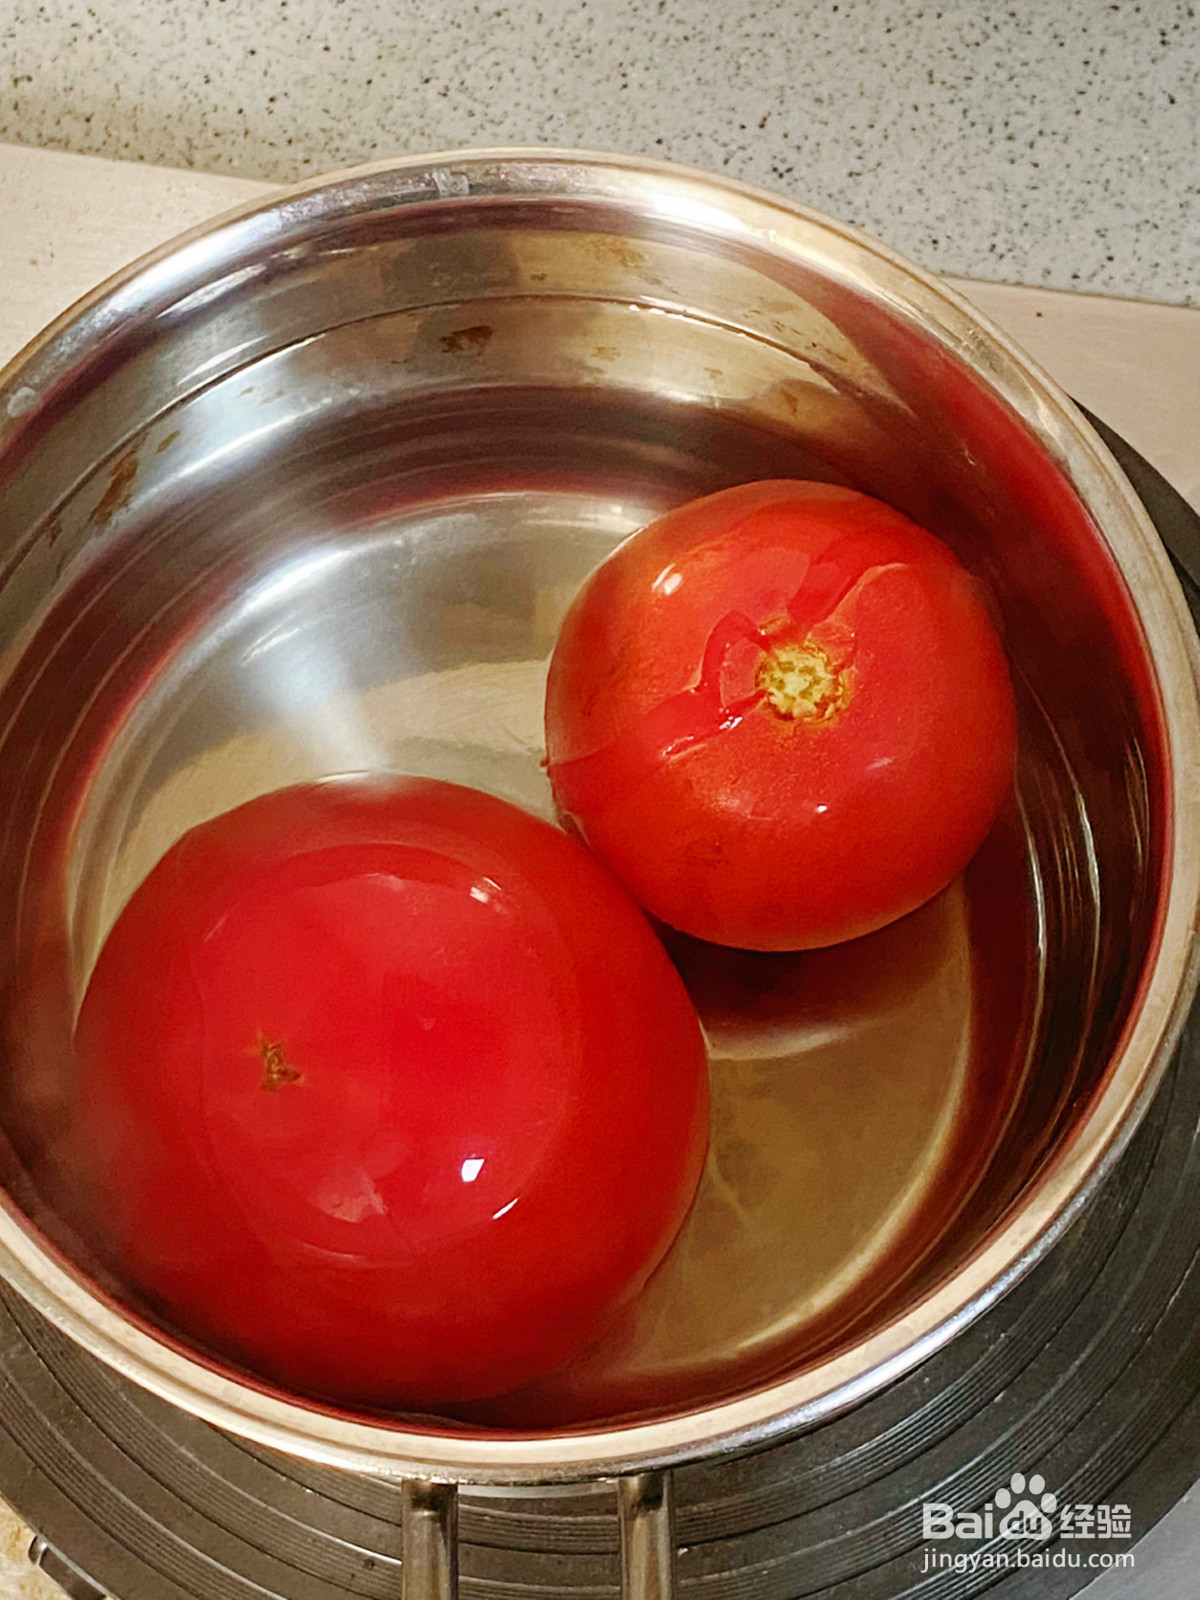 番茄浓汤肥牛卷的做法